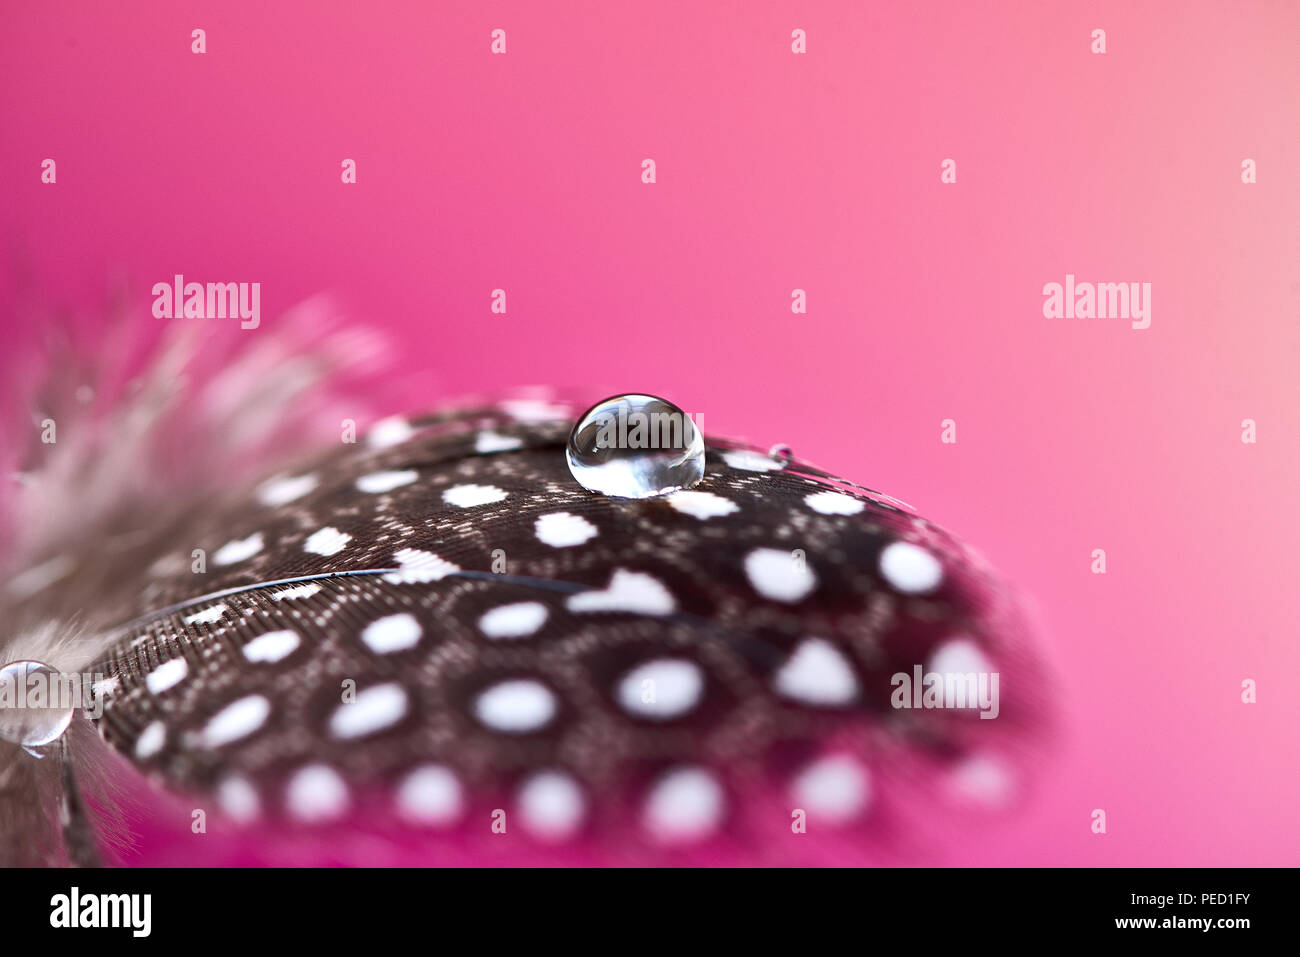 Hintergrund mit vogelfeder. Perlhuhn weiches Federbett mit transparenten Tropfen Wasser auf rosa Hintergrund. Abstrakte romantische künstlerische empfindliche magische Bild für den Urlaub, Karten. Stockfoto